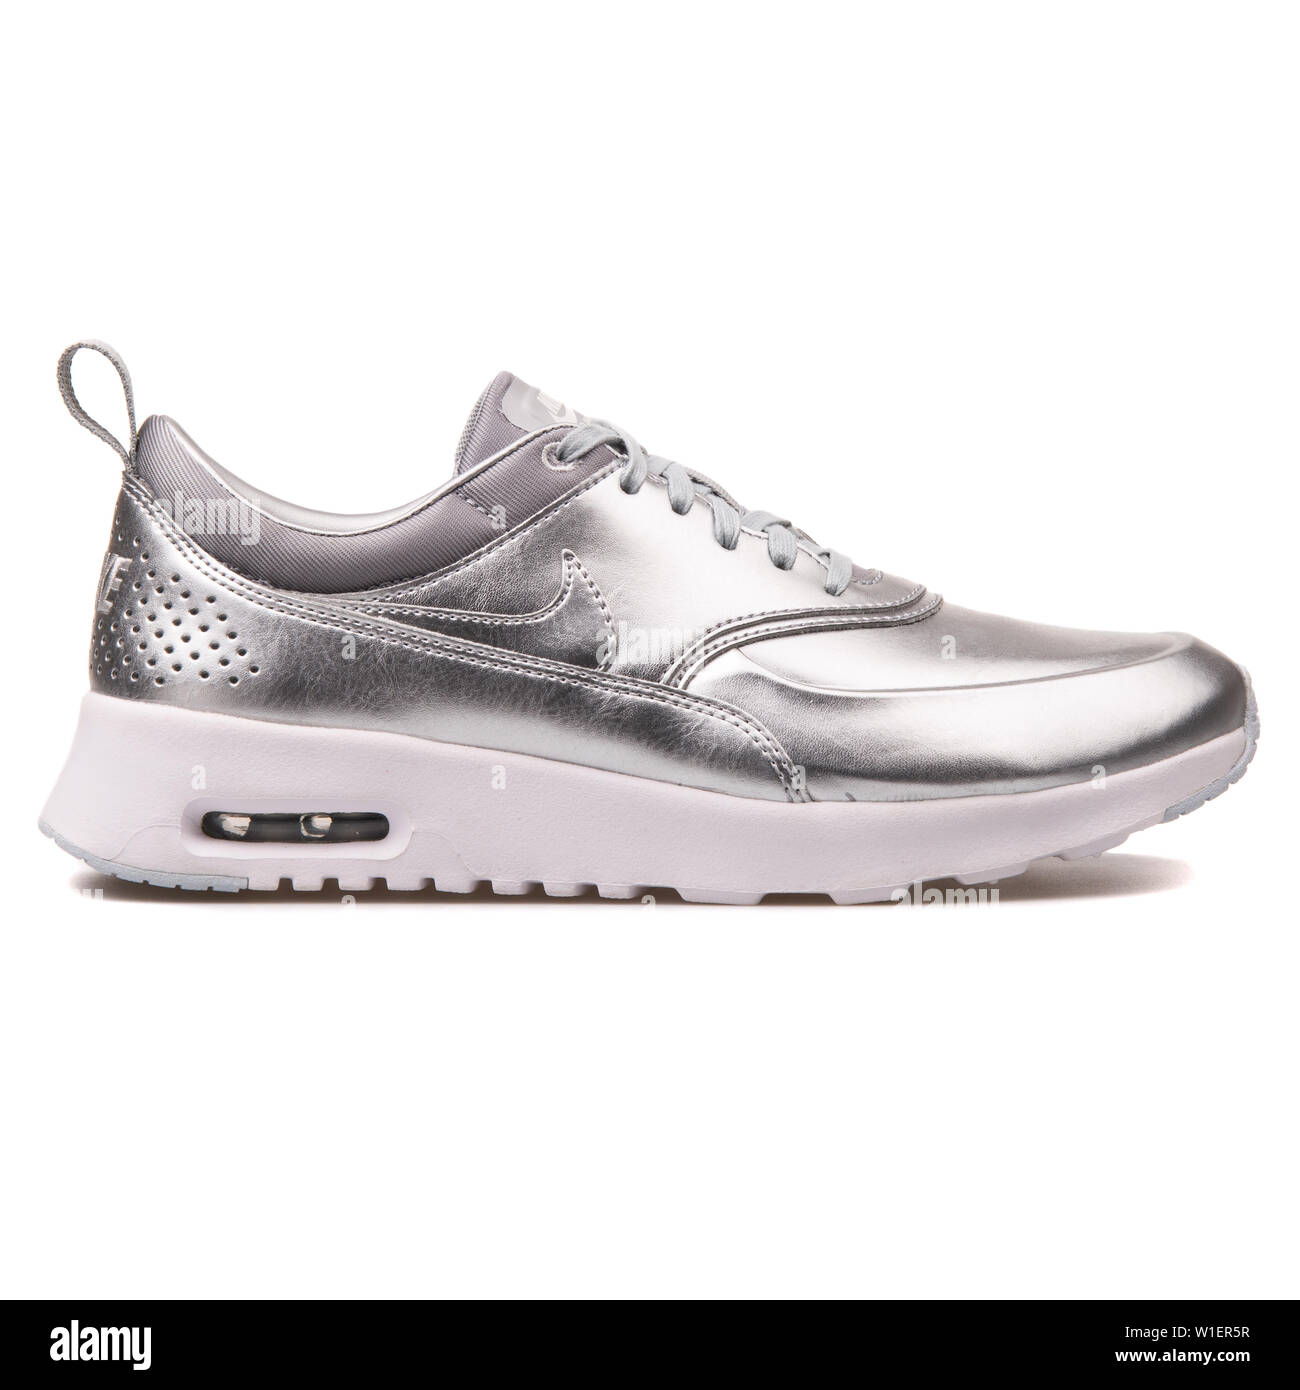 Wien, Österreich - 10 August 2017: Nike Air Max Thea Metallic Silber  Sneaker auf weißem Hintergrund Stockfotografie - Alamy